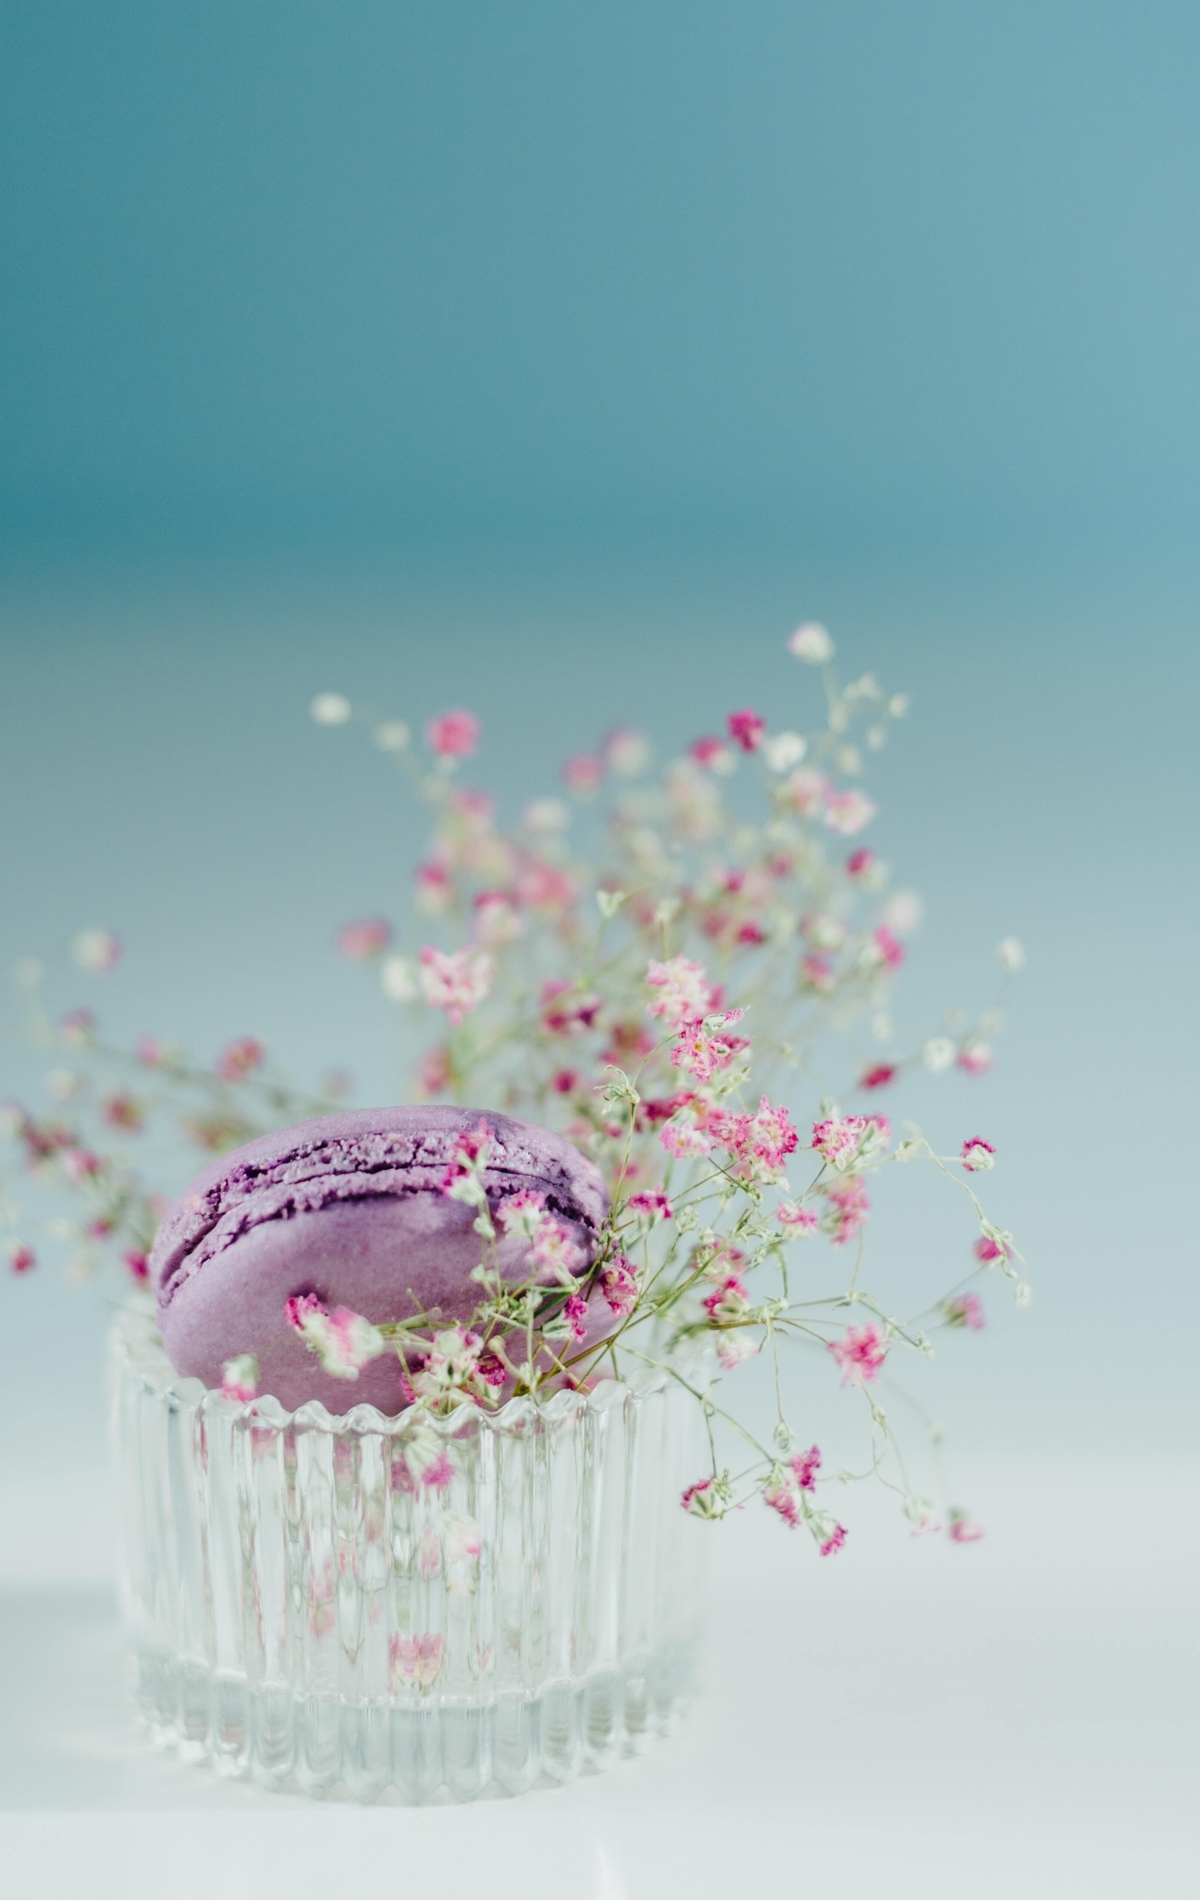 Картинка: Макарон, печенье, пирожное, сиреневое, стакан, цветочки, фотограф, Larissa Farber